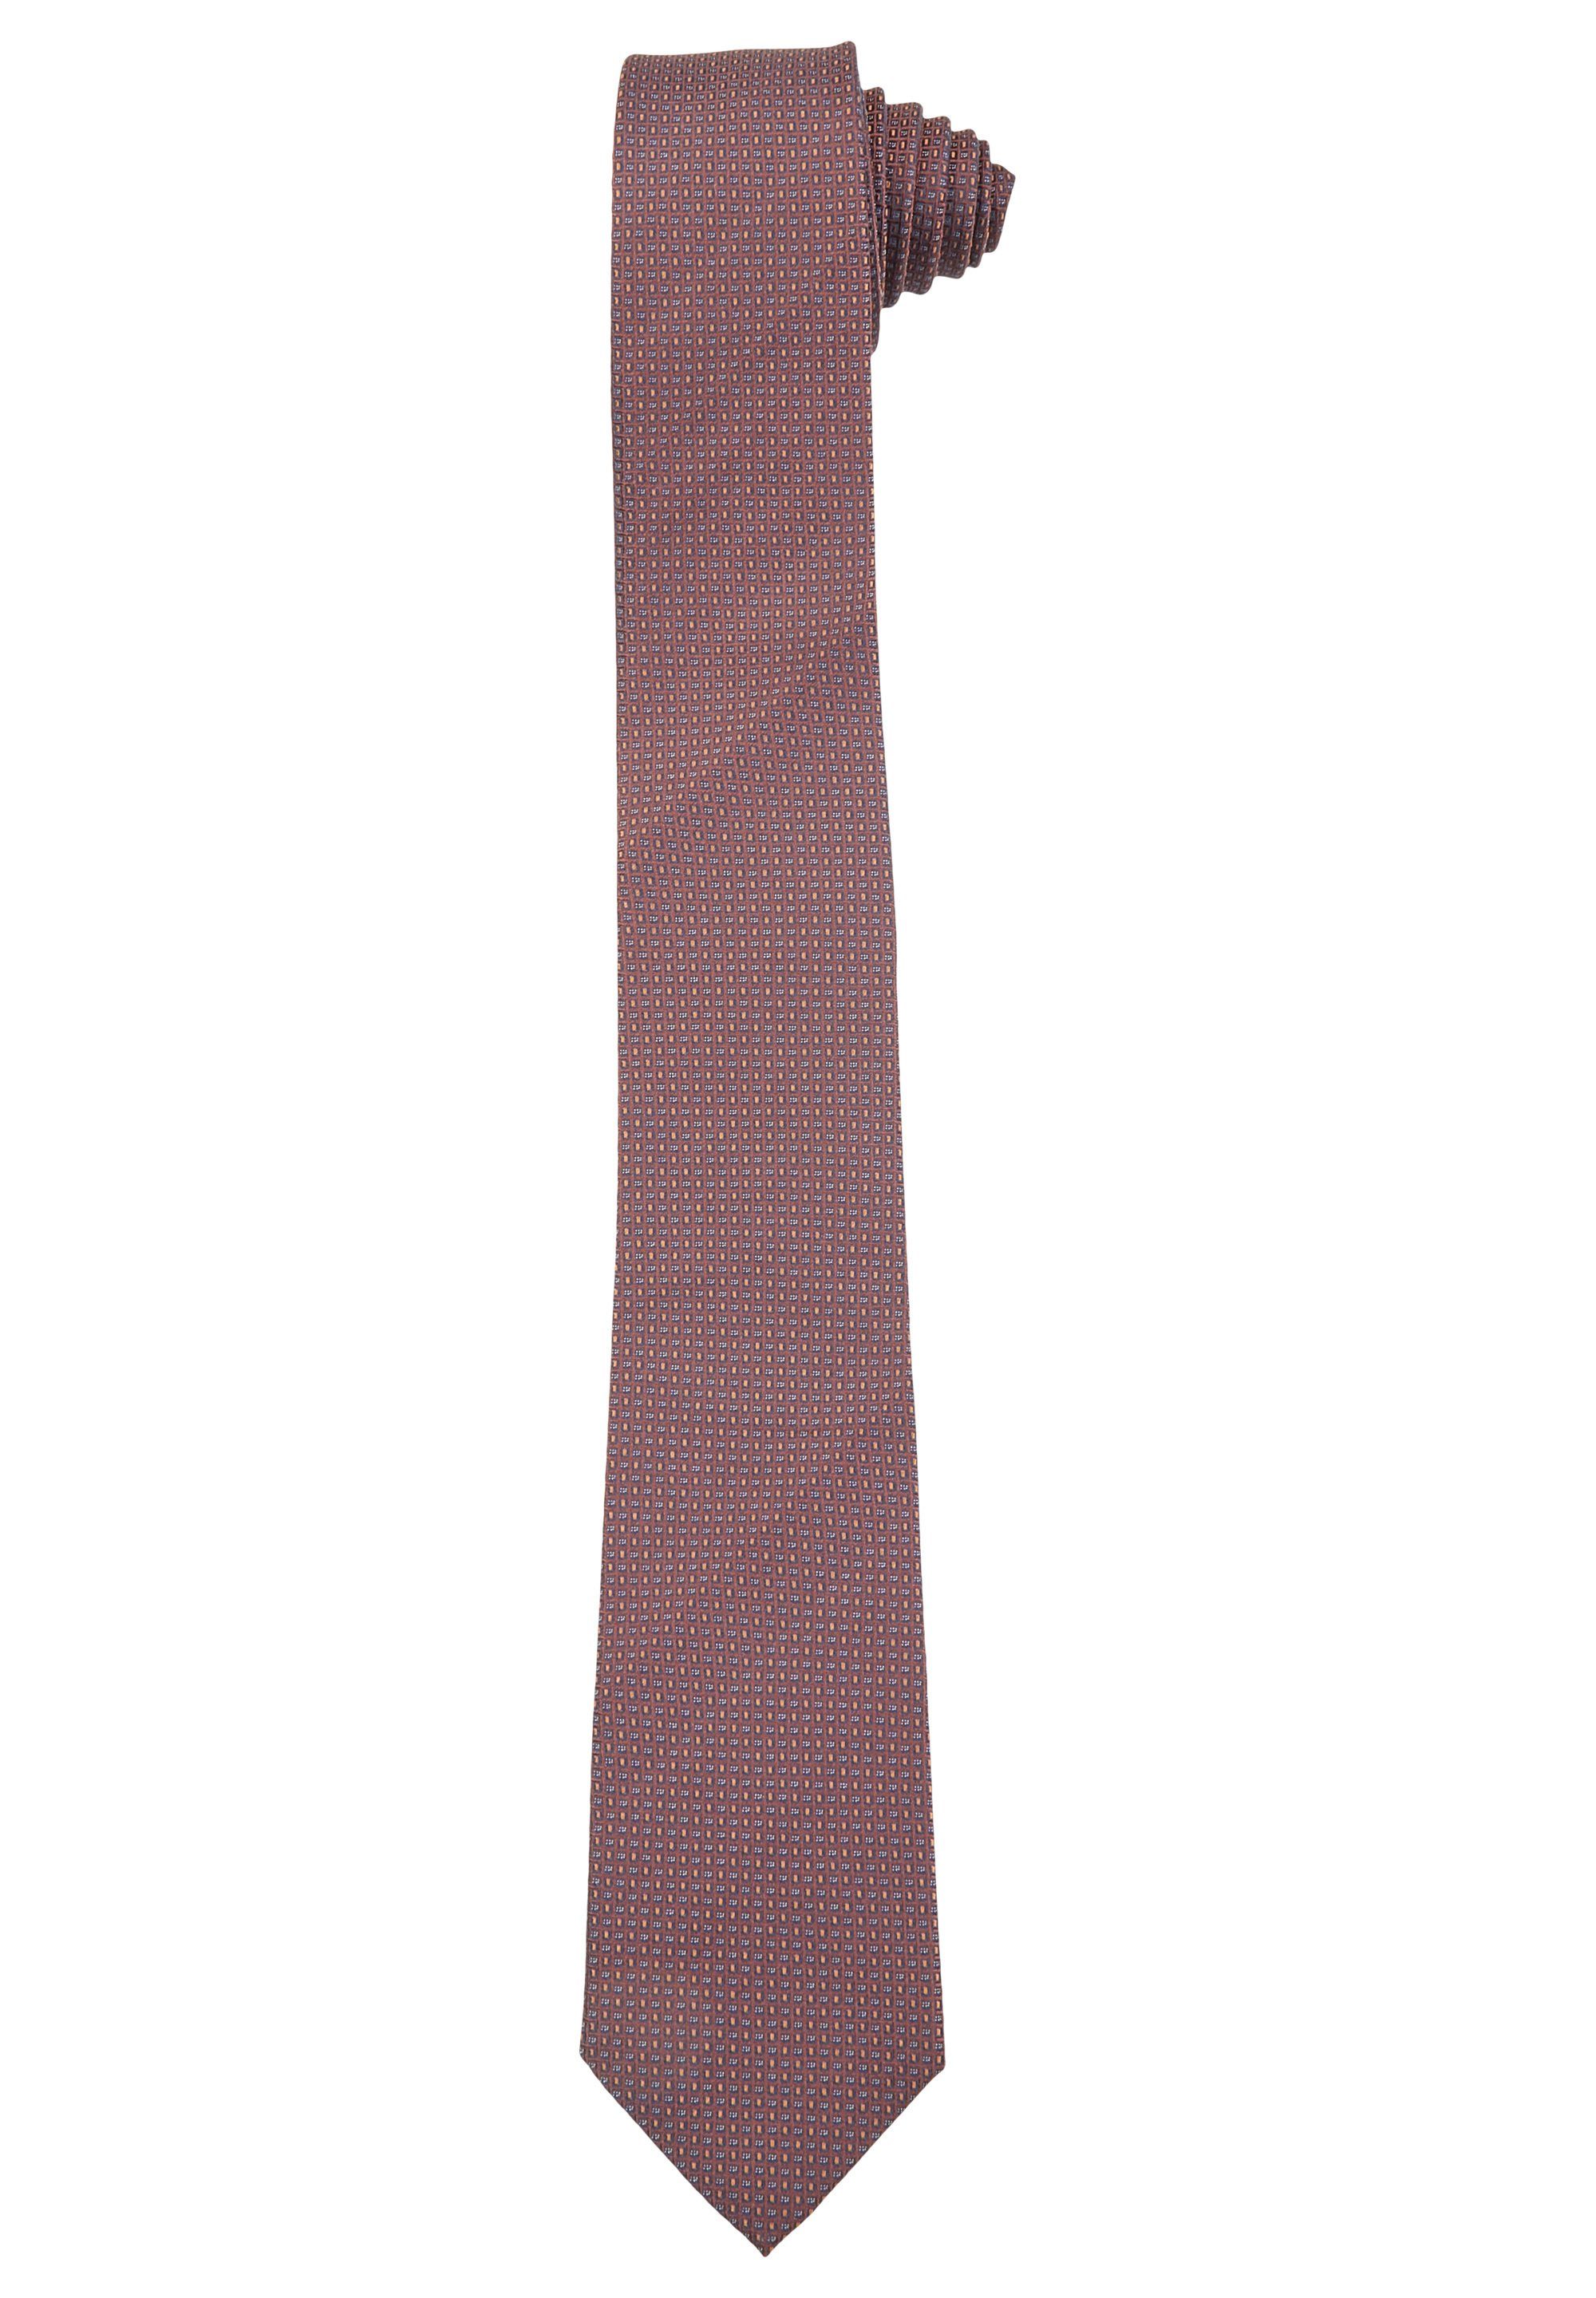 HECHTER PARIS Krawatte aus feinster Seide hazelnut | Breite Krawatten